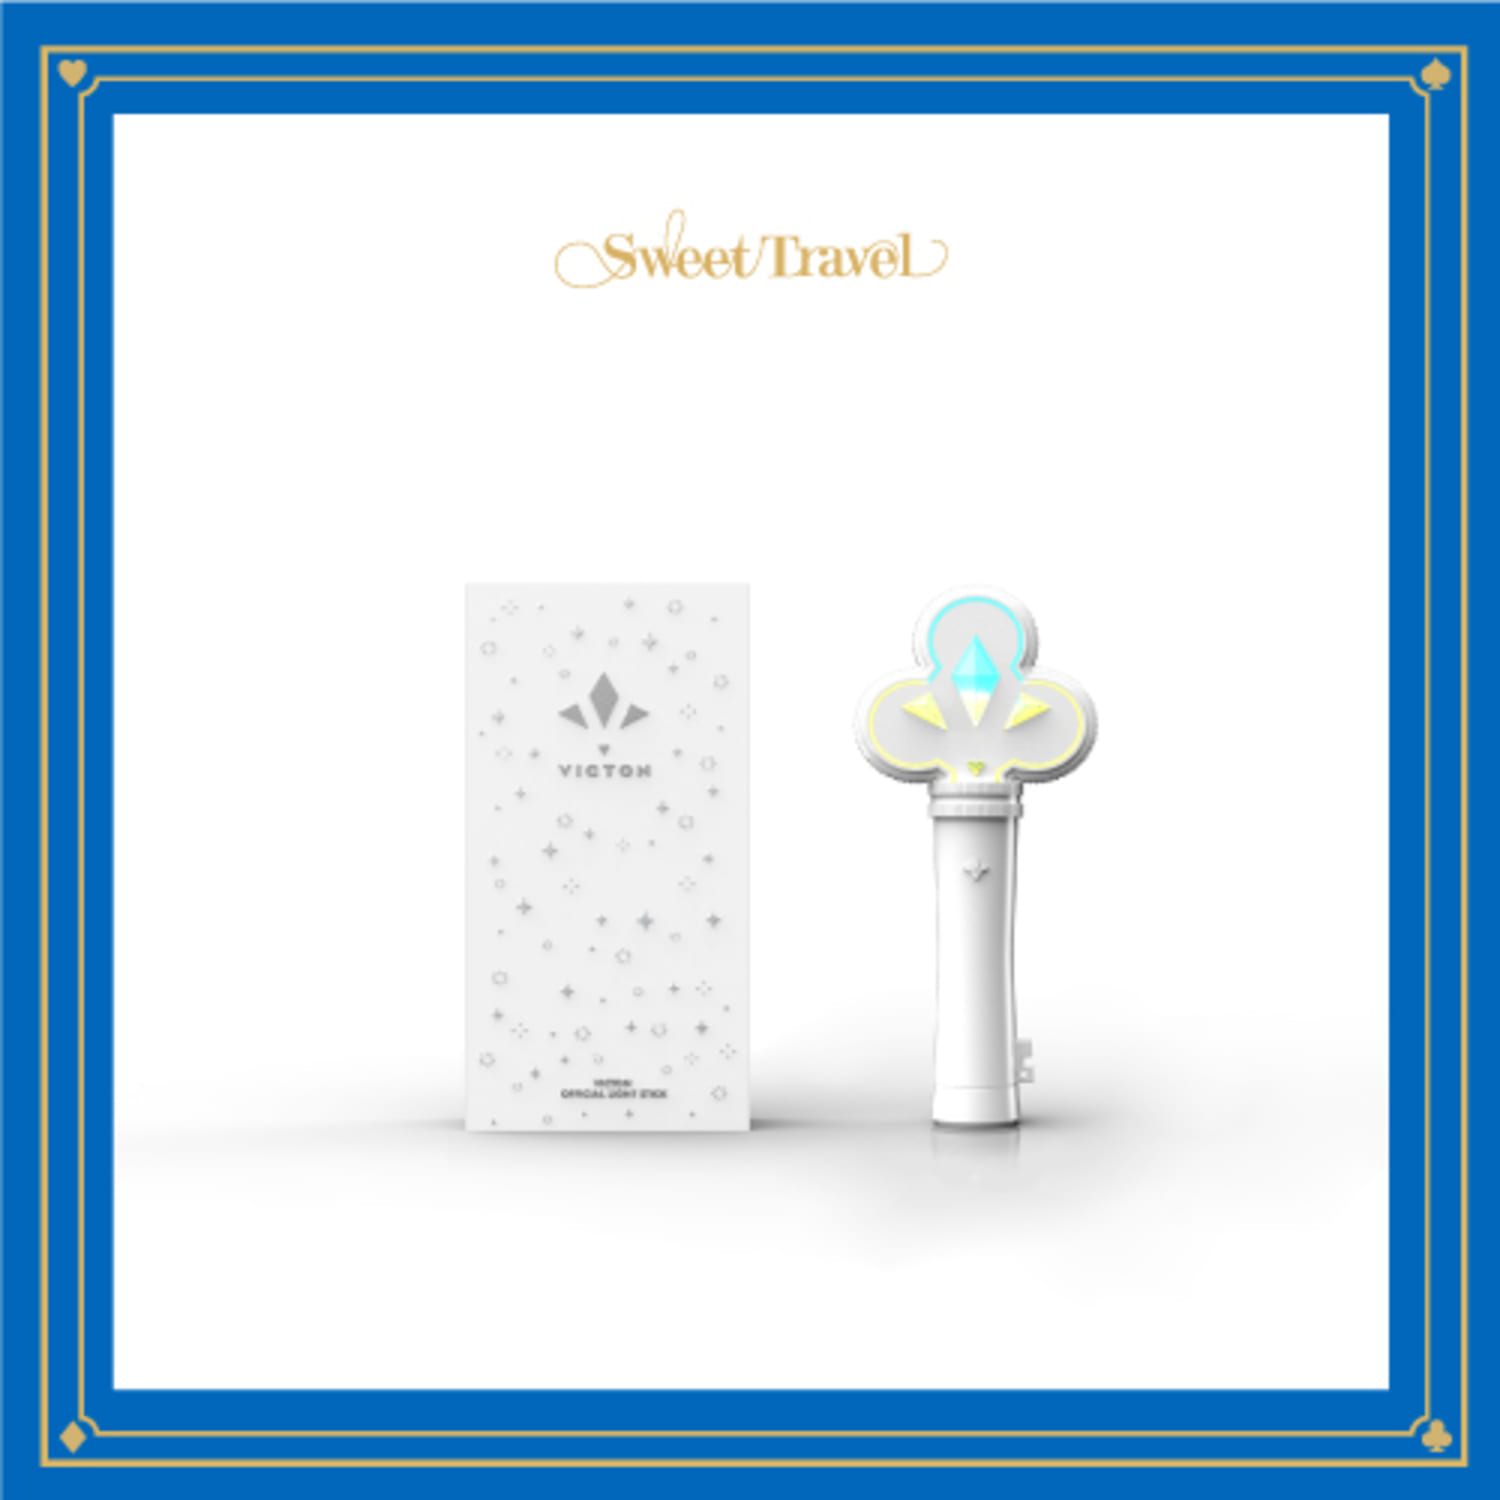 [12/17발송] VICTON(빅톤)  [Sweet Travel] Official Goods - OFFICIAL LIGHT STICK